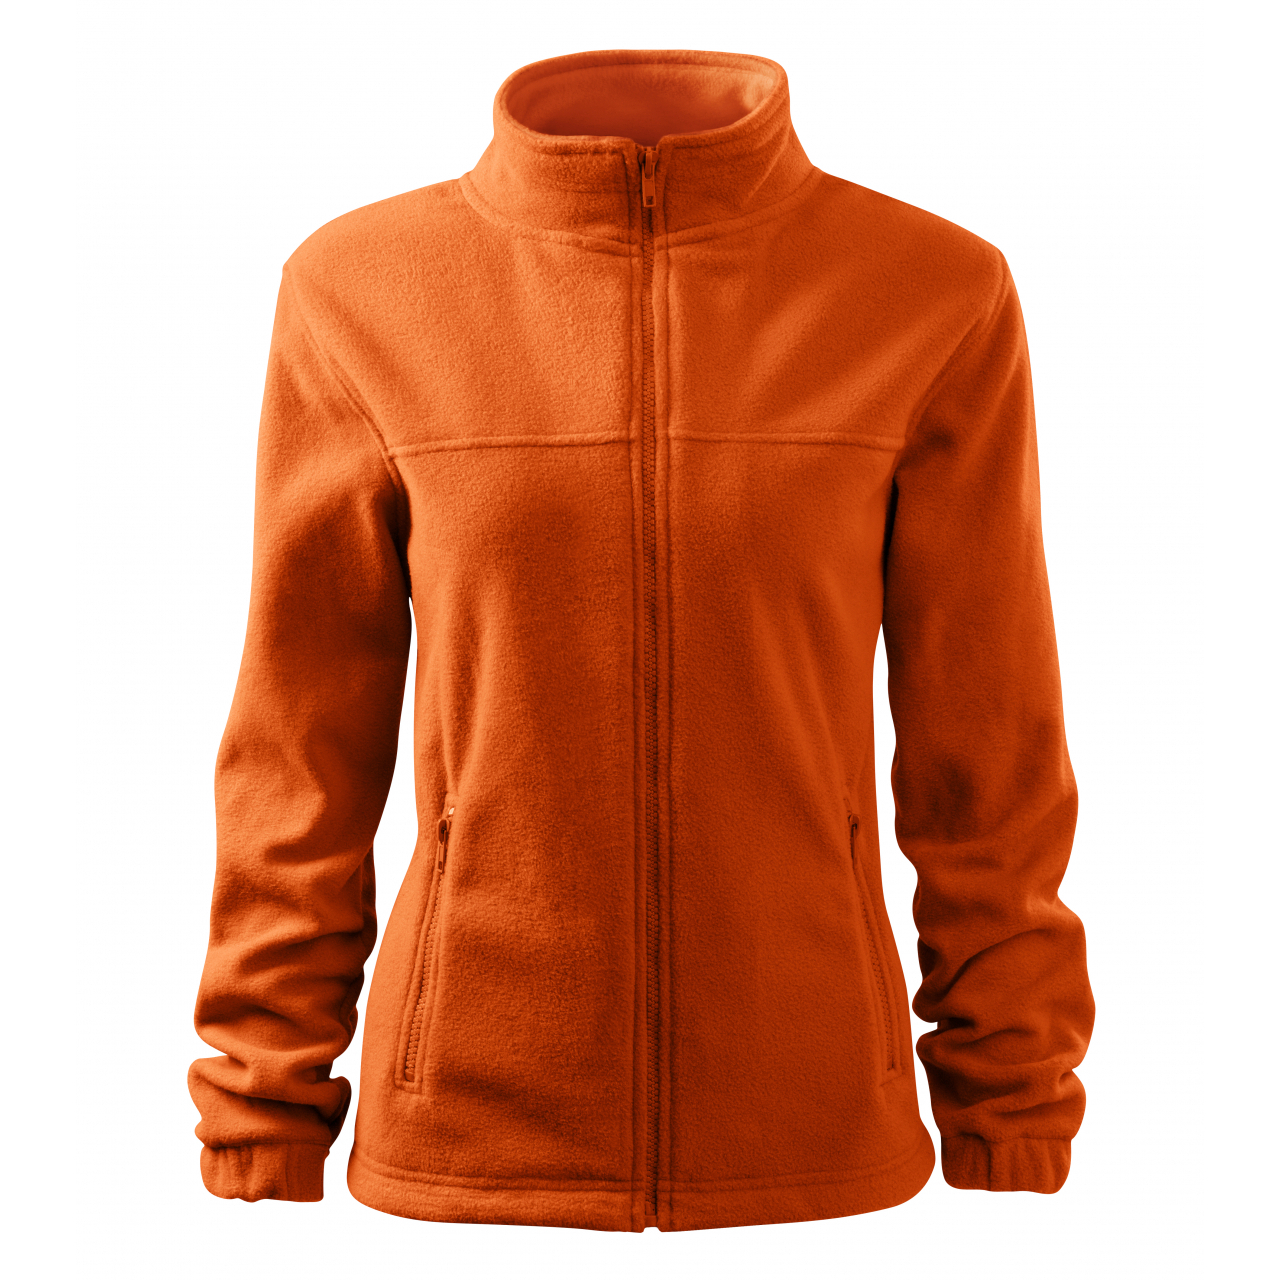 Bunda dámská Malfini Jacket - oranžová, XL